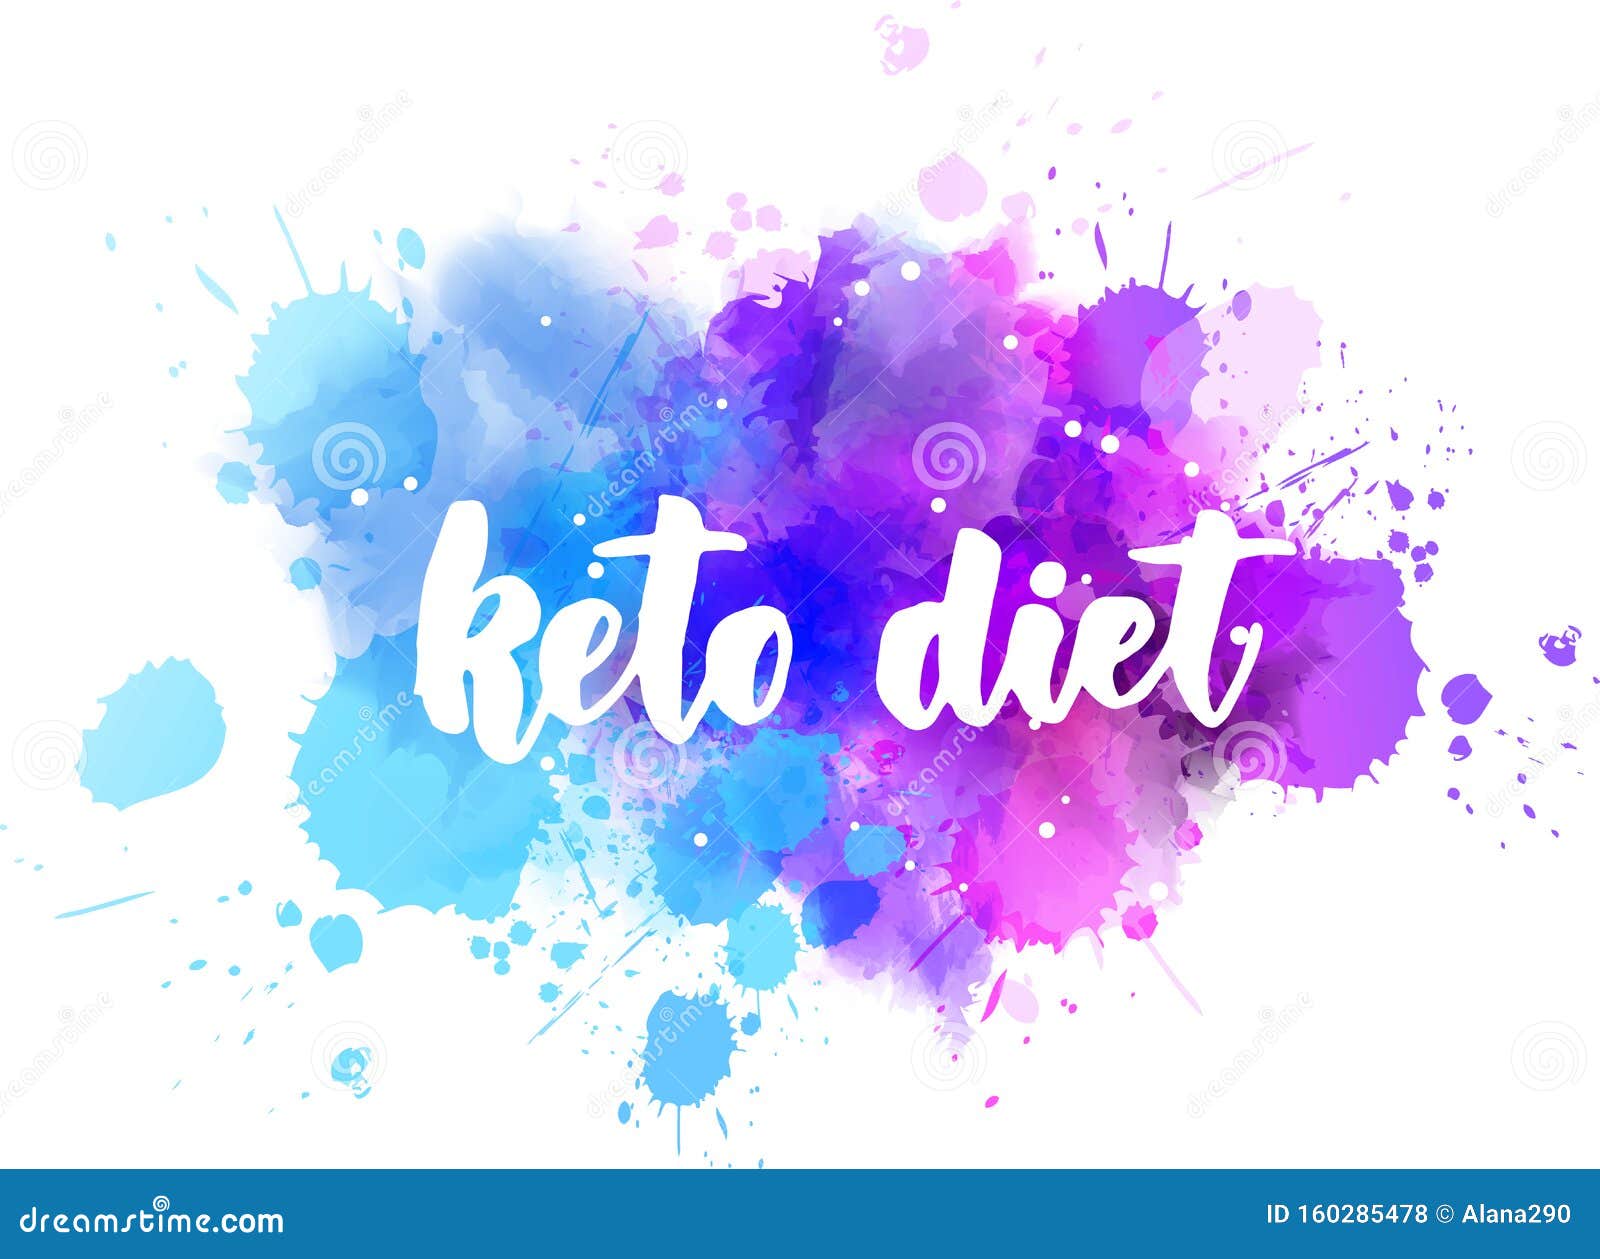 motivation for keto diet